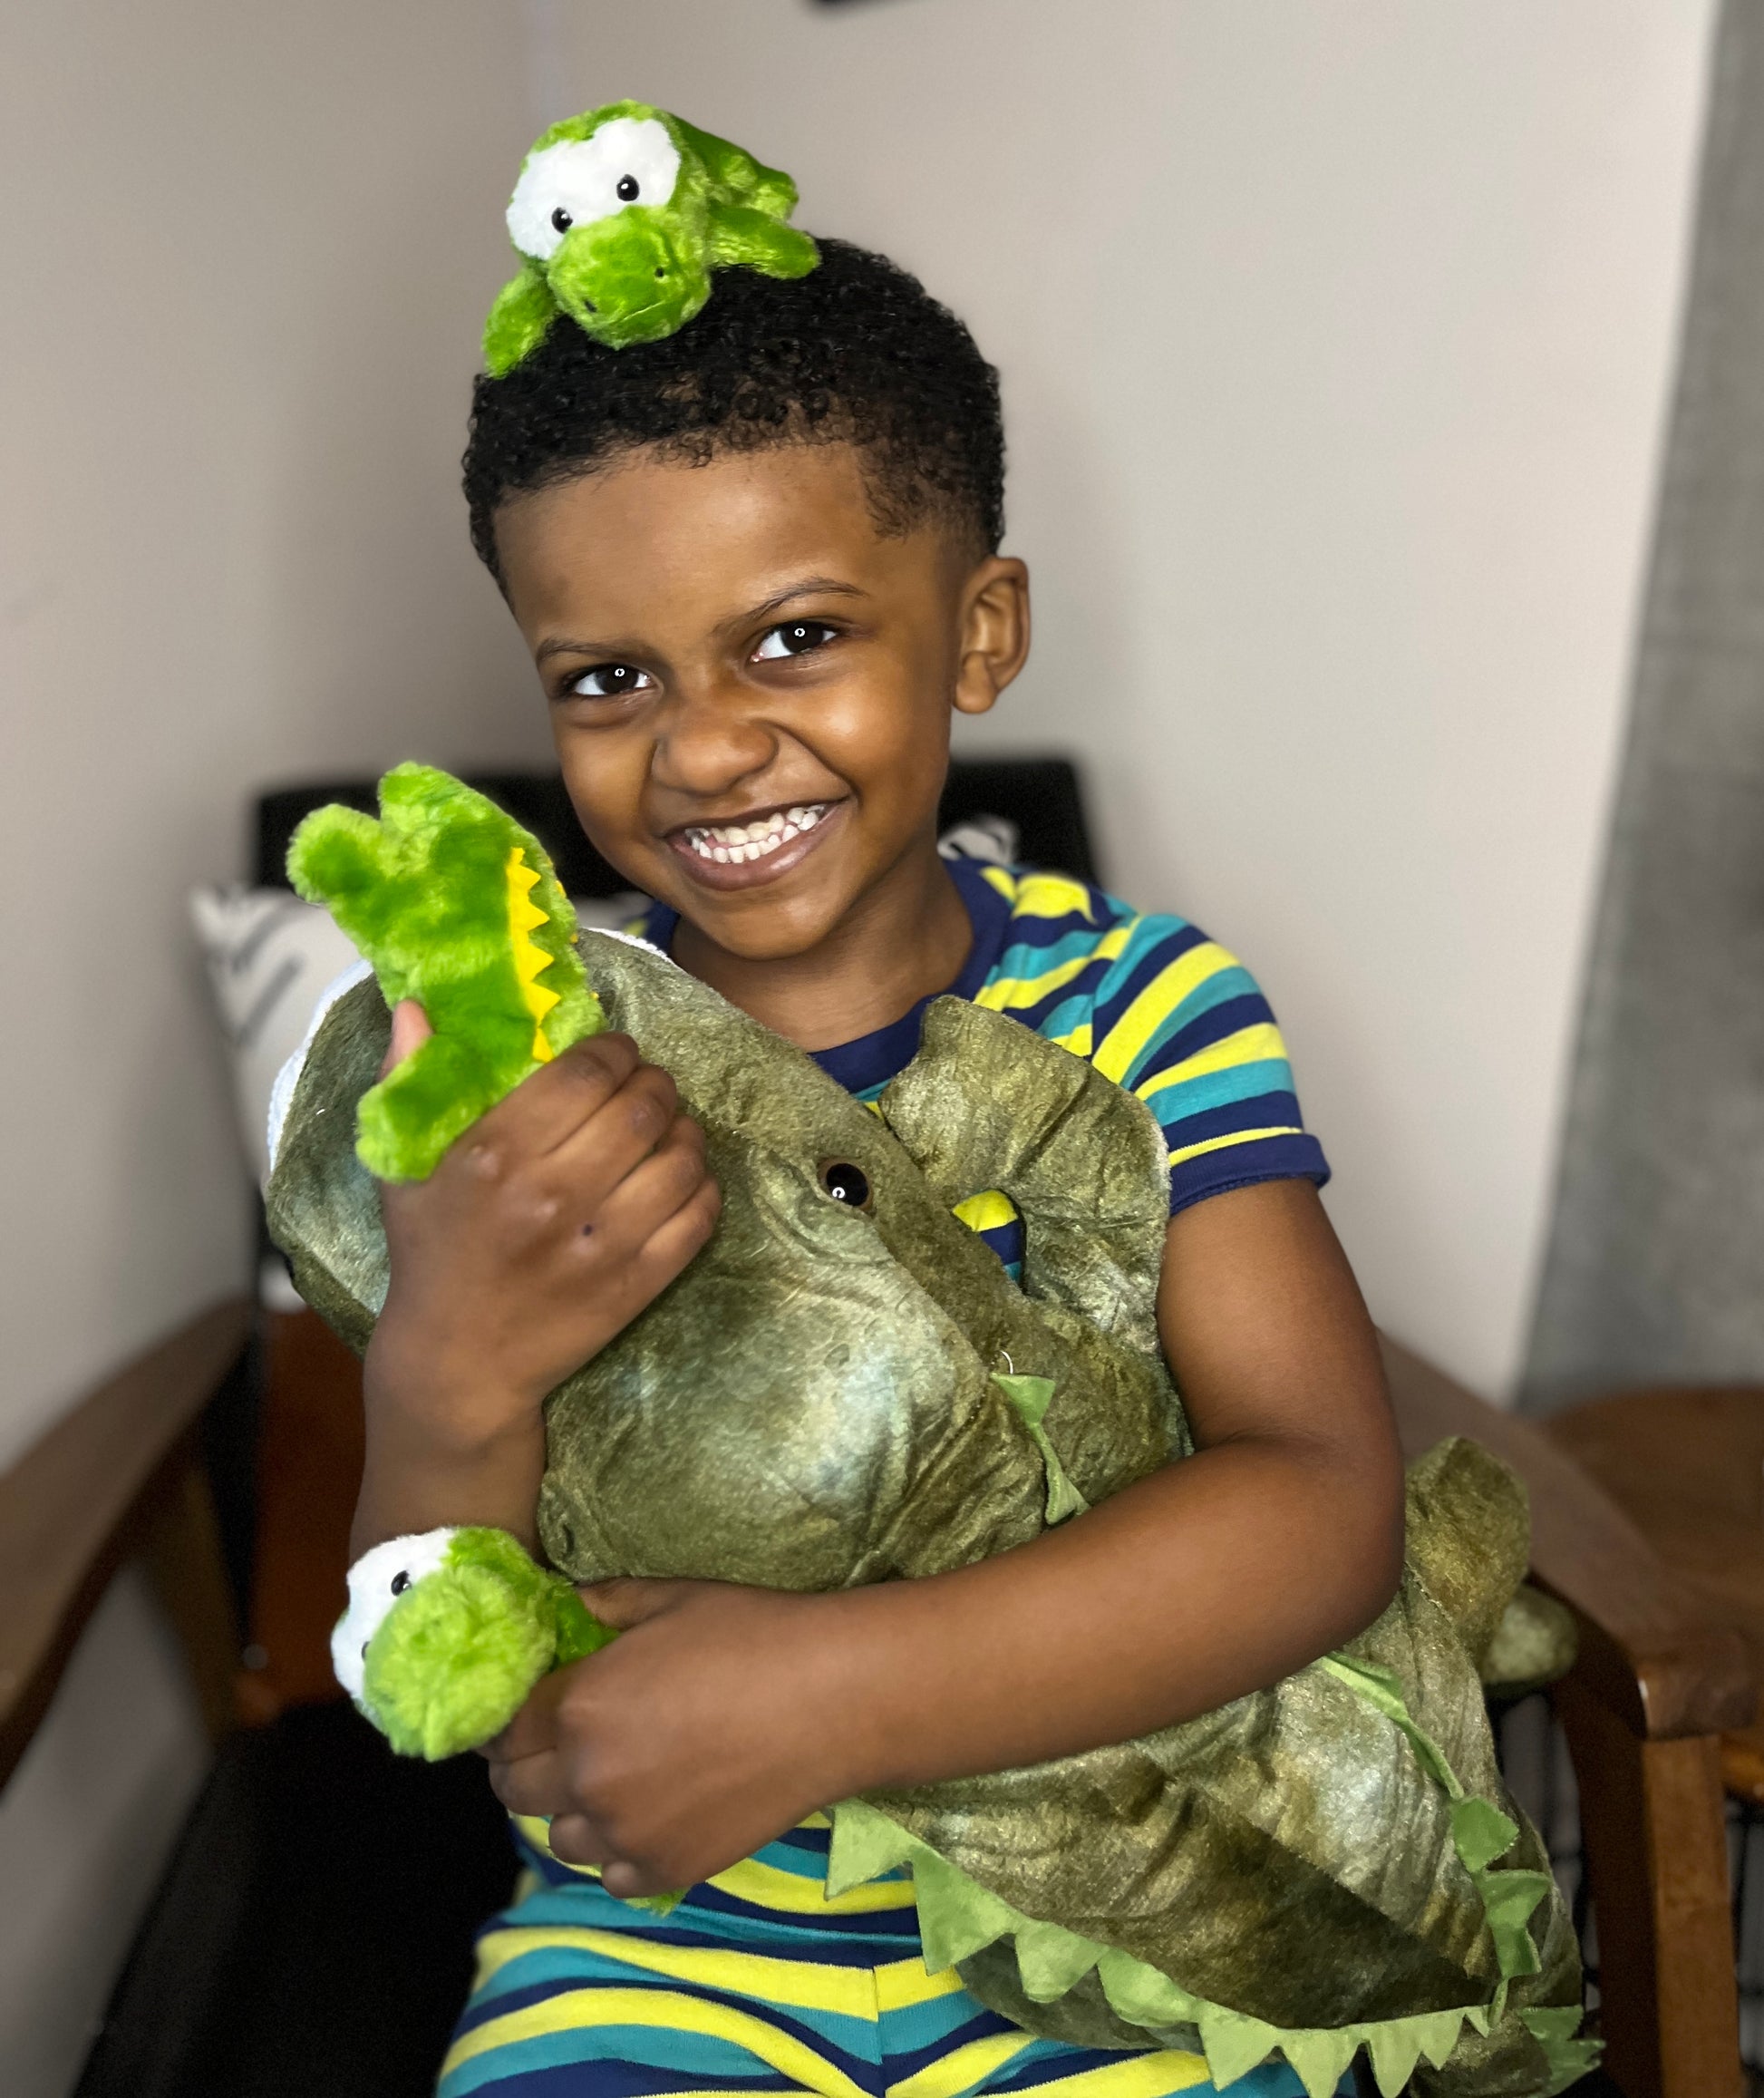 Alligator-Stofftier mit 3 Babykrokodilen, grün, 24 Zoll